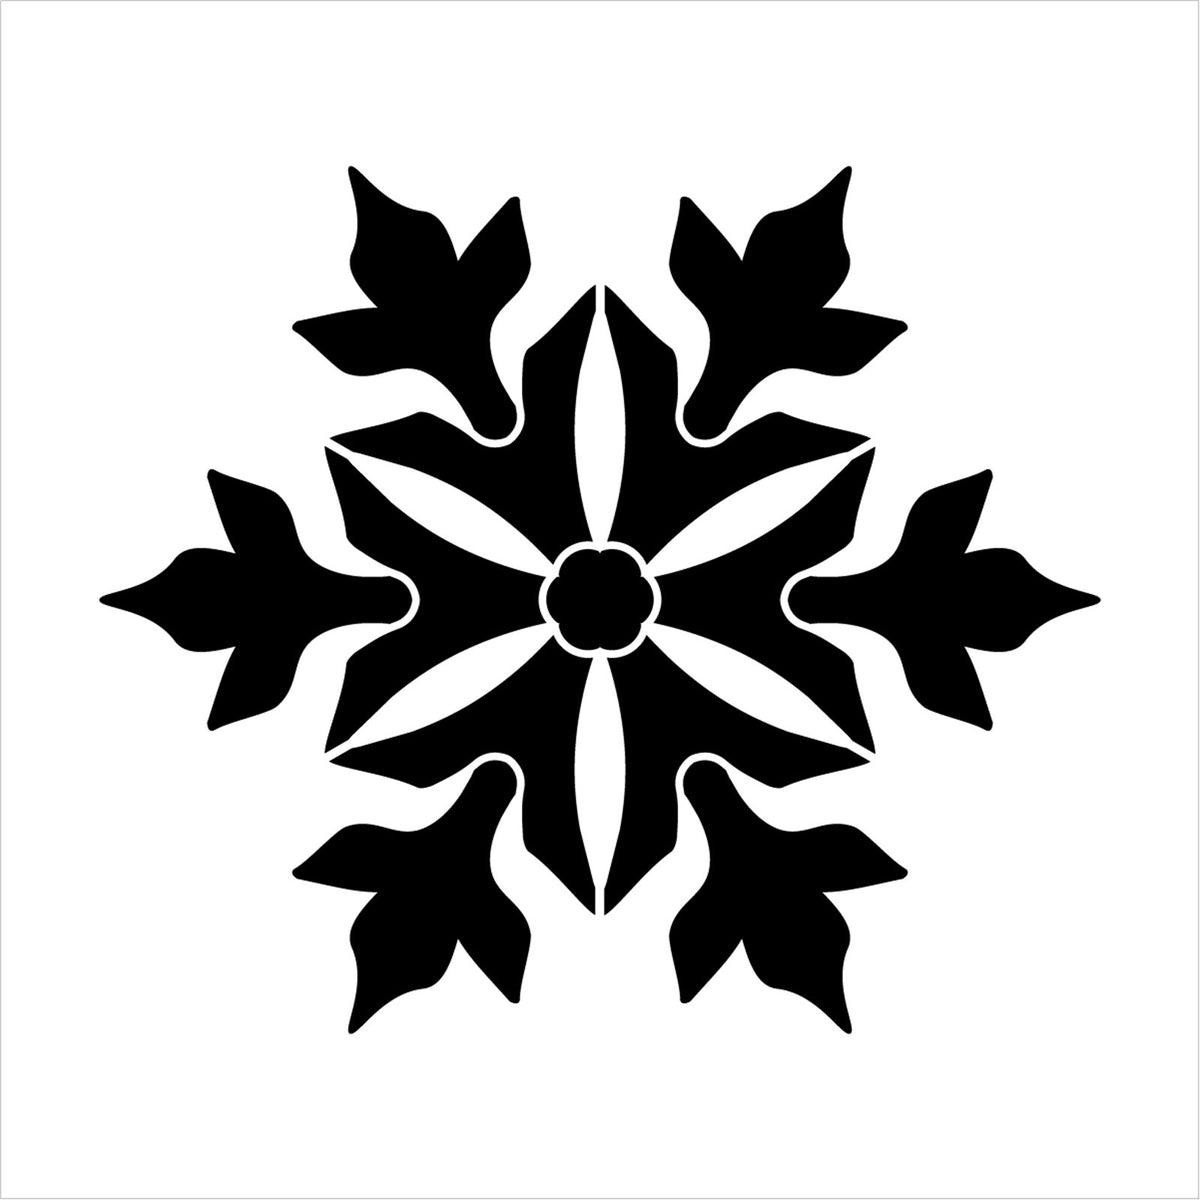 Delicate Snowflake Silhouette Trio Stencil by StudioR12 - Select